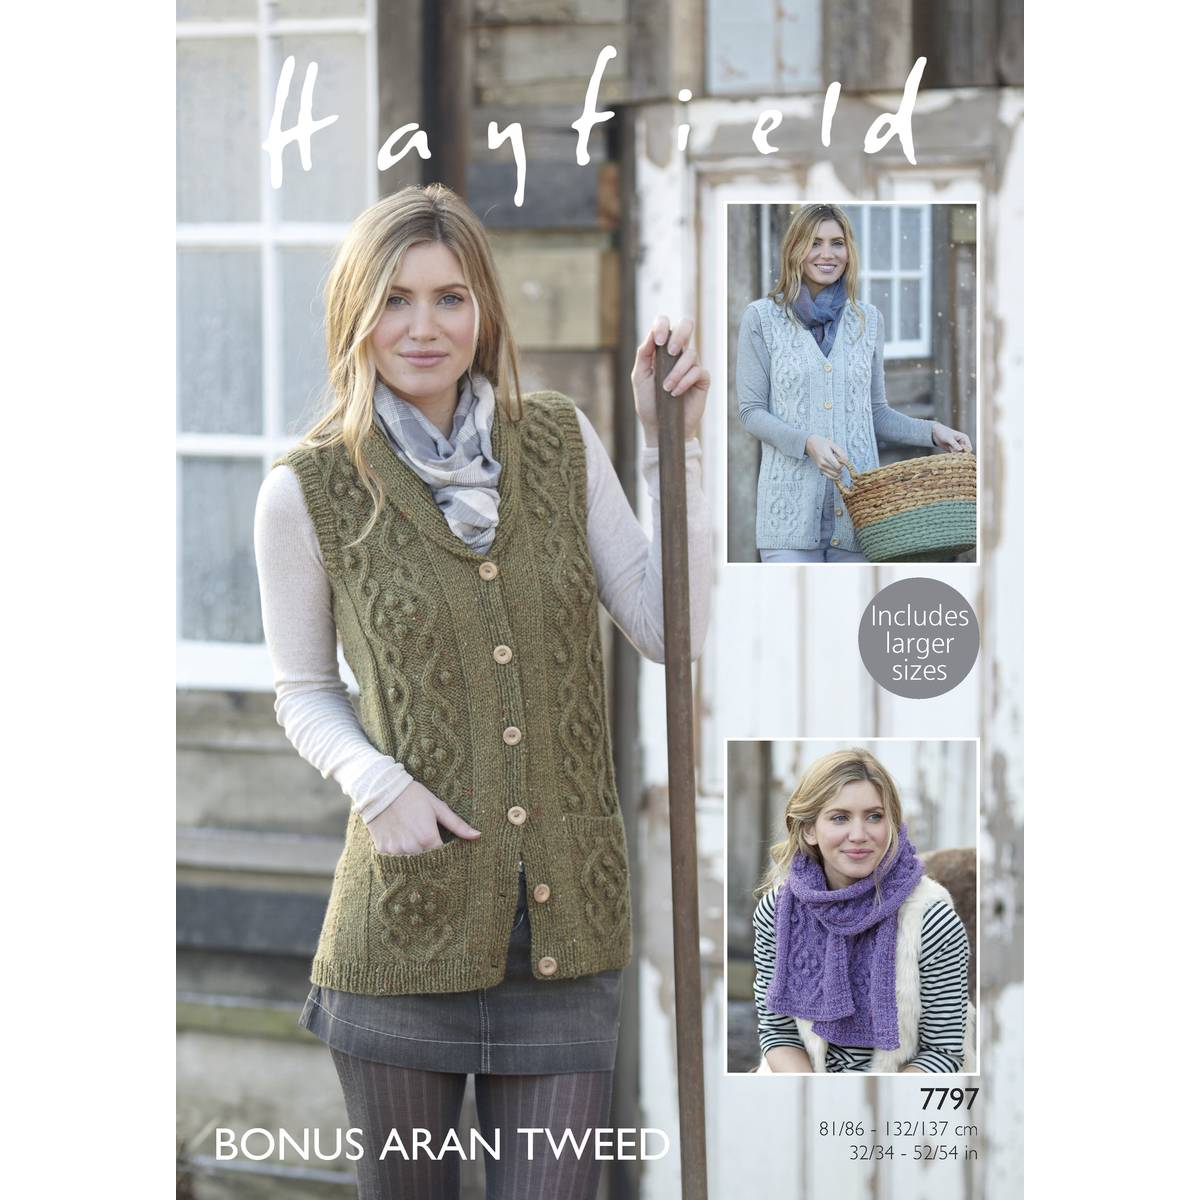 Tweed Knitting Patterns Hayfield Bonus Aran Tweed Waistcoat And Scarf Pattern 7797